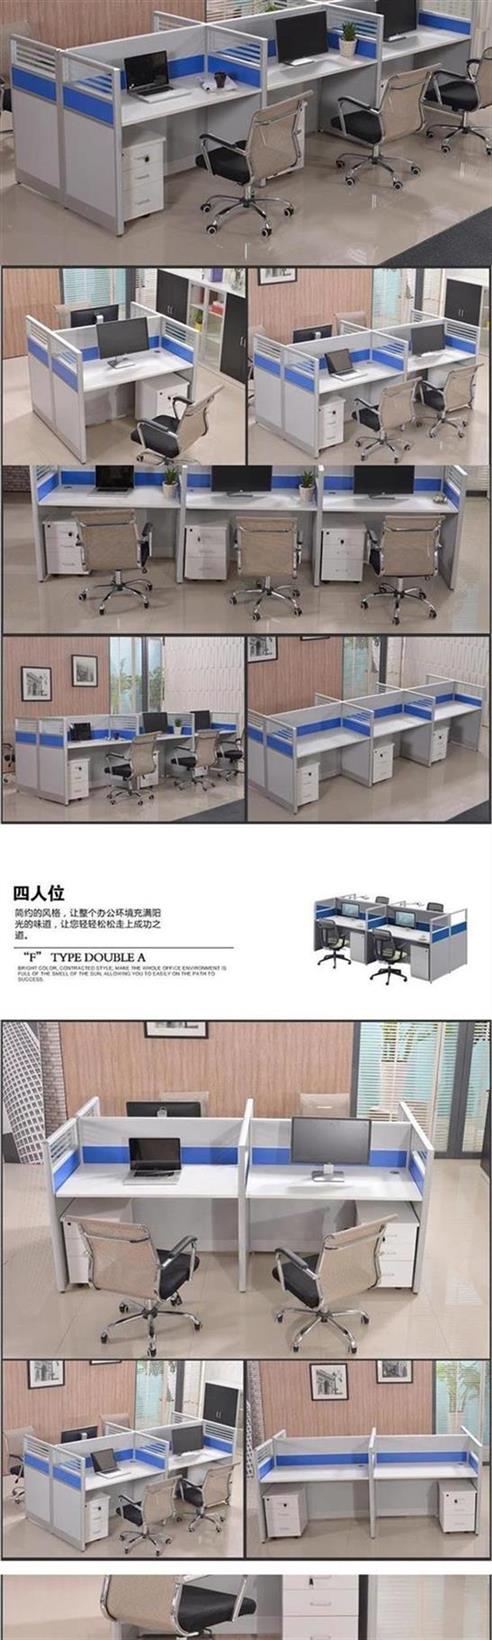 Tùy chỉnh nội thất văn phòng Thâm Quyến 2/4/6/8 vị trí người đơn giản hiện đại bàn nhân viên kết hợp màn hình vị trí nhân viên - Nội thất văn phòng